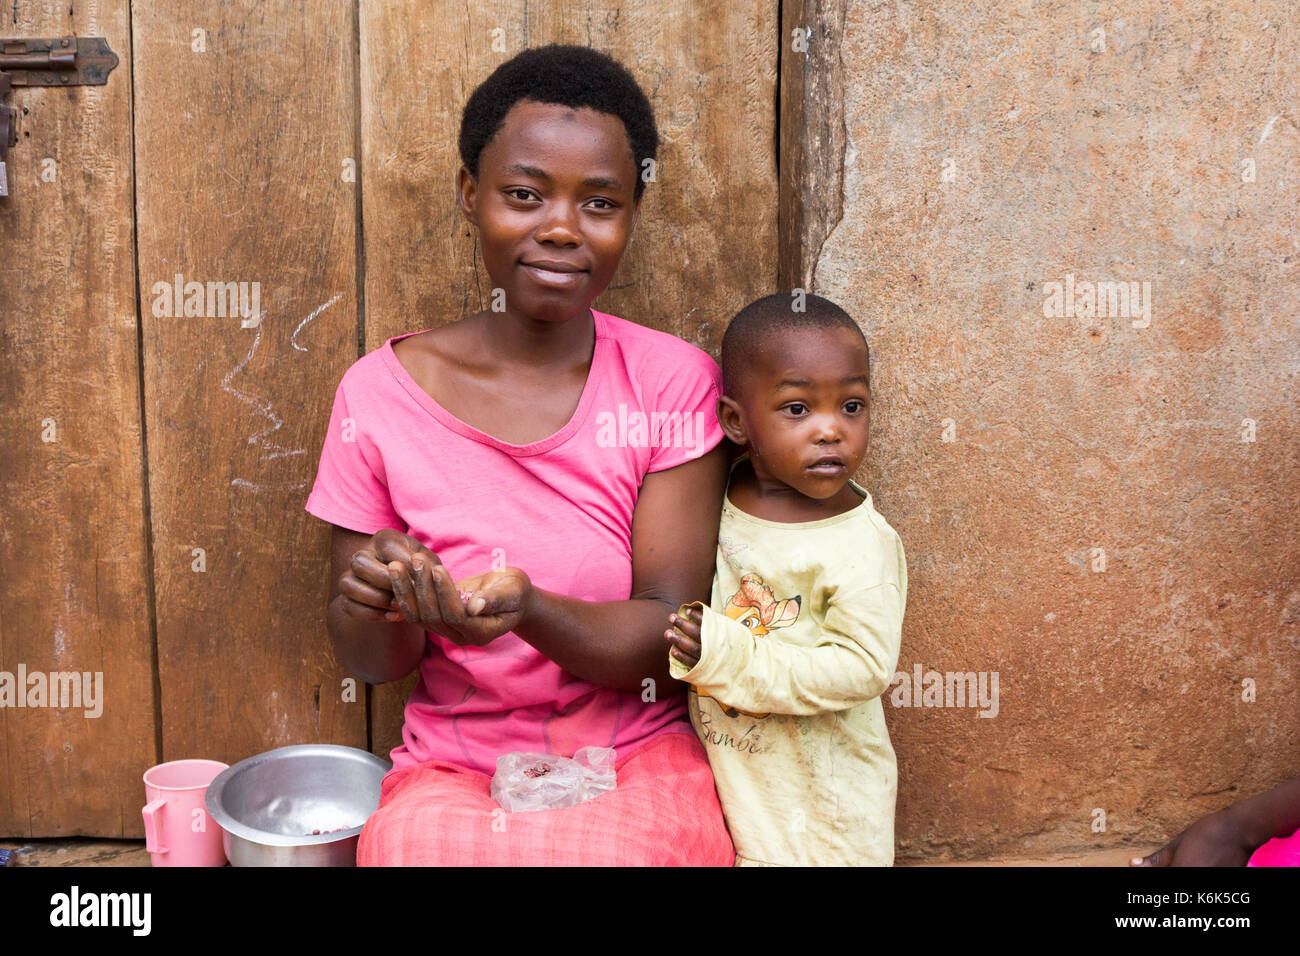 Lugazi, en Ouganda. 09 juin 2017. Une mère africaine de rire avec un petit enfant garçon. la femme est assise sur le seuil de la porte. les grains de tri Banque D'Images